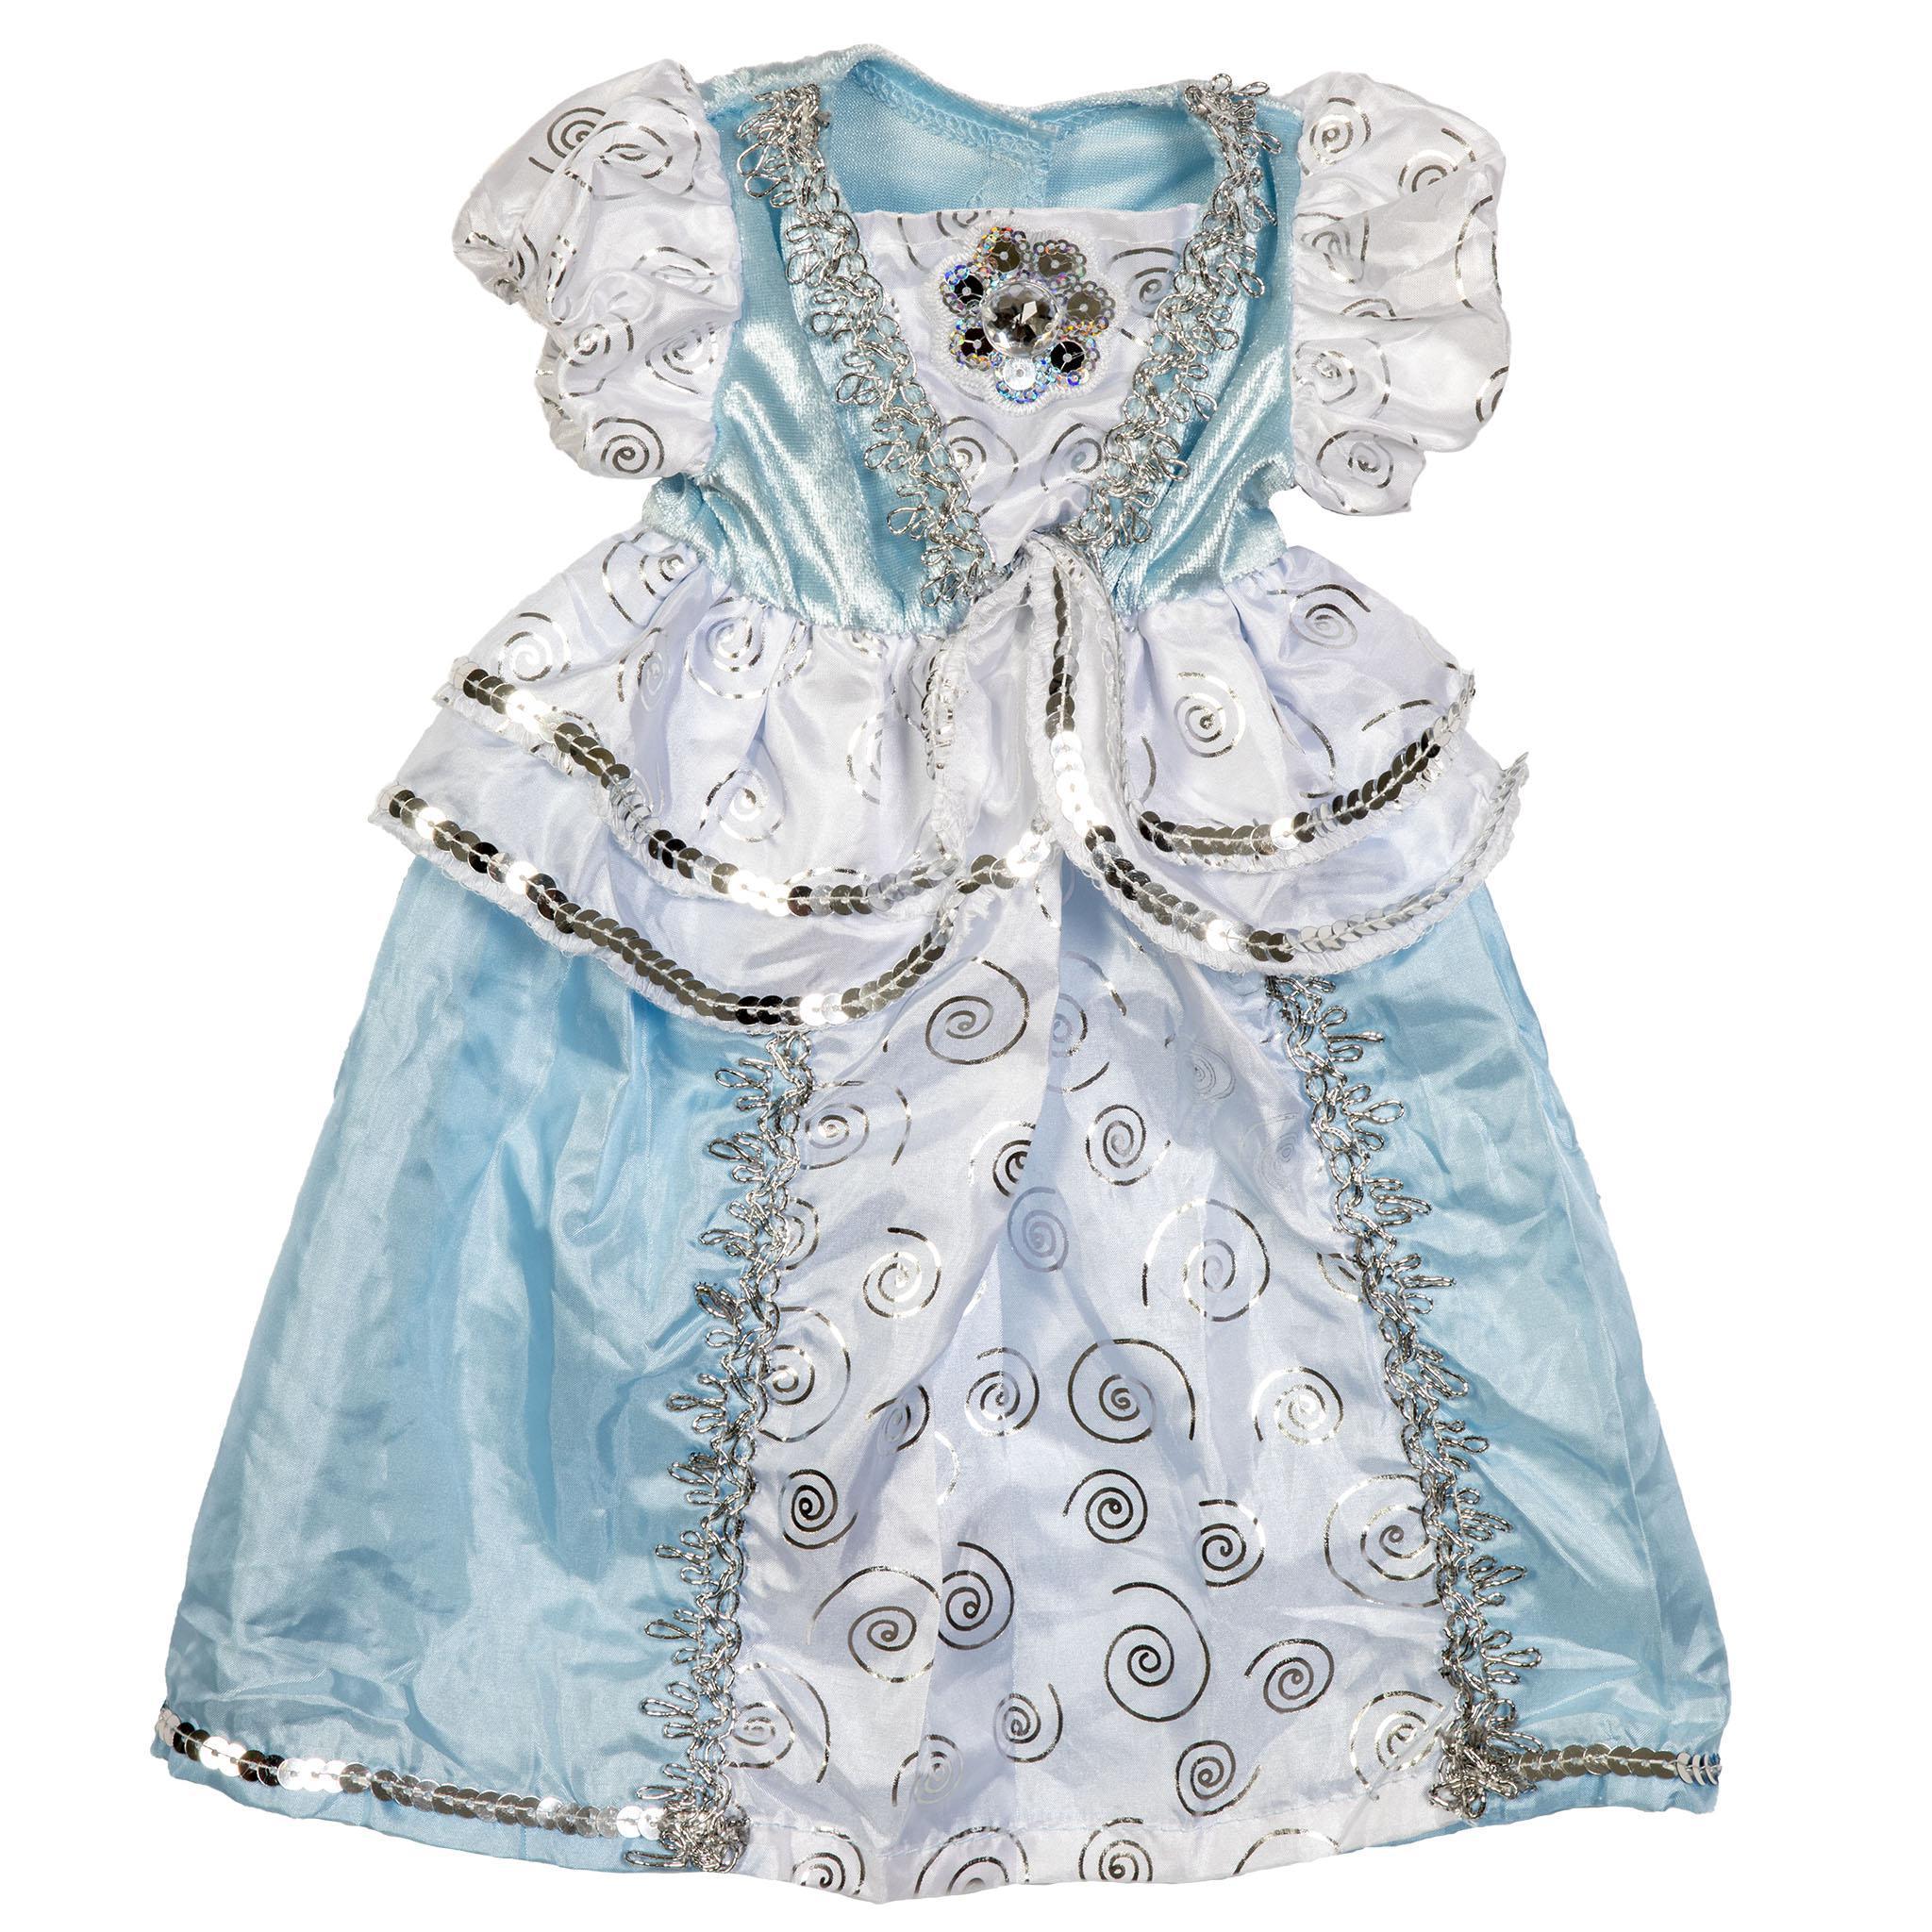 Lil Doll Dress Cinderella Fits 16-20"